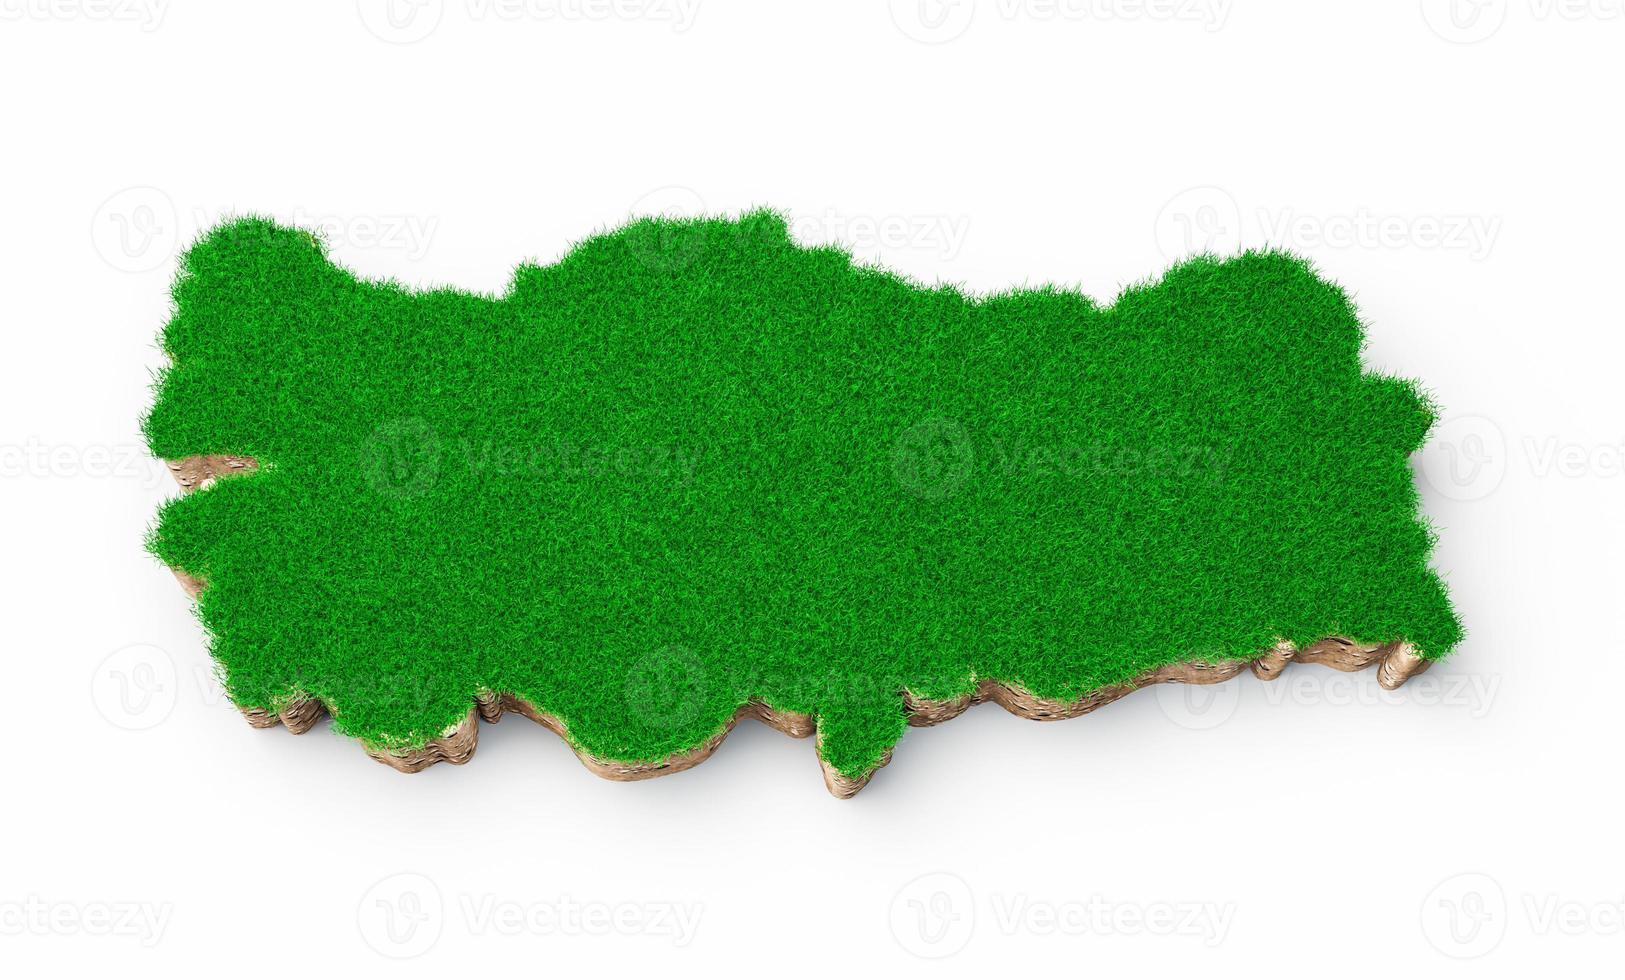 kalkon karta jord mark geologi tvärsnitt med grönt gräs och sten marken textur 3d illustration foto